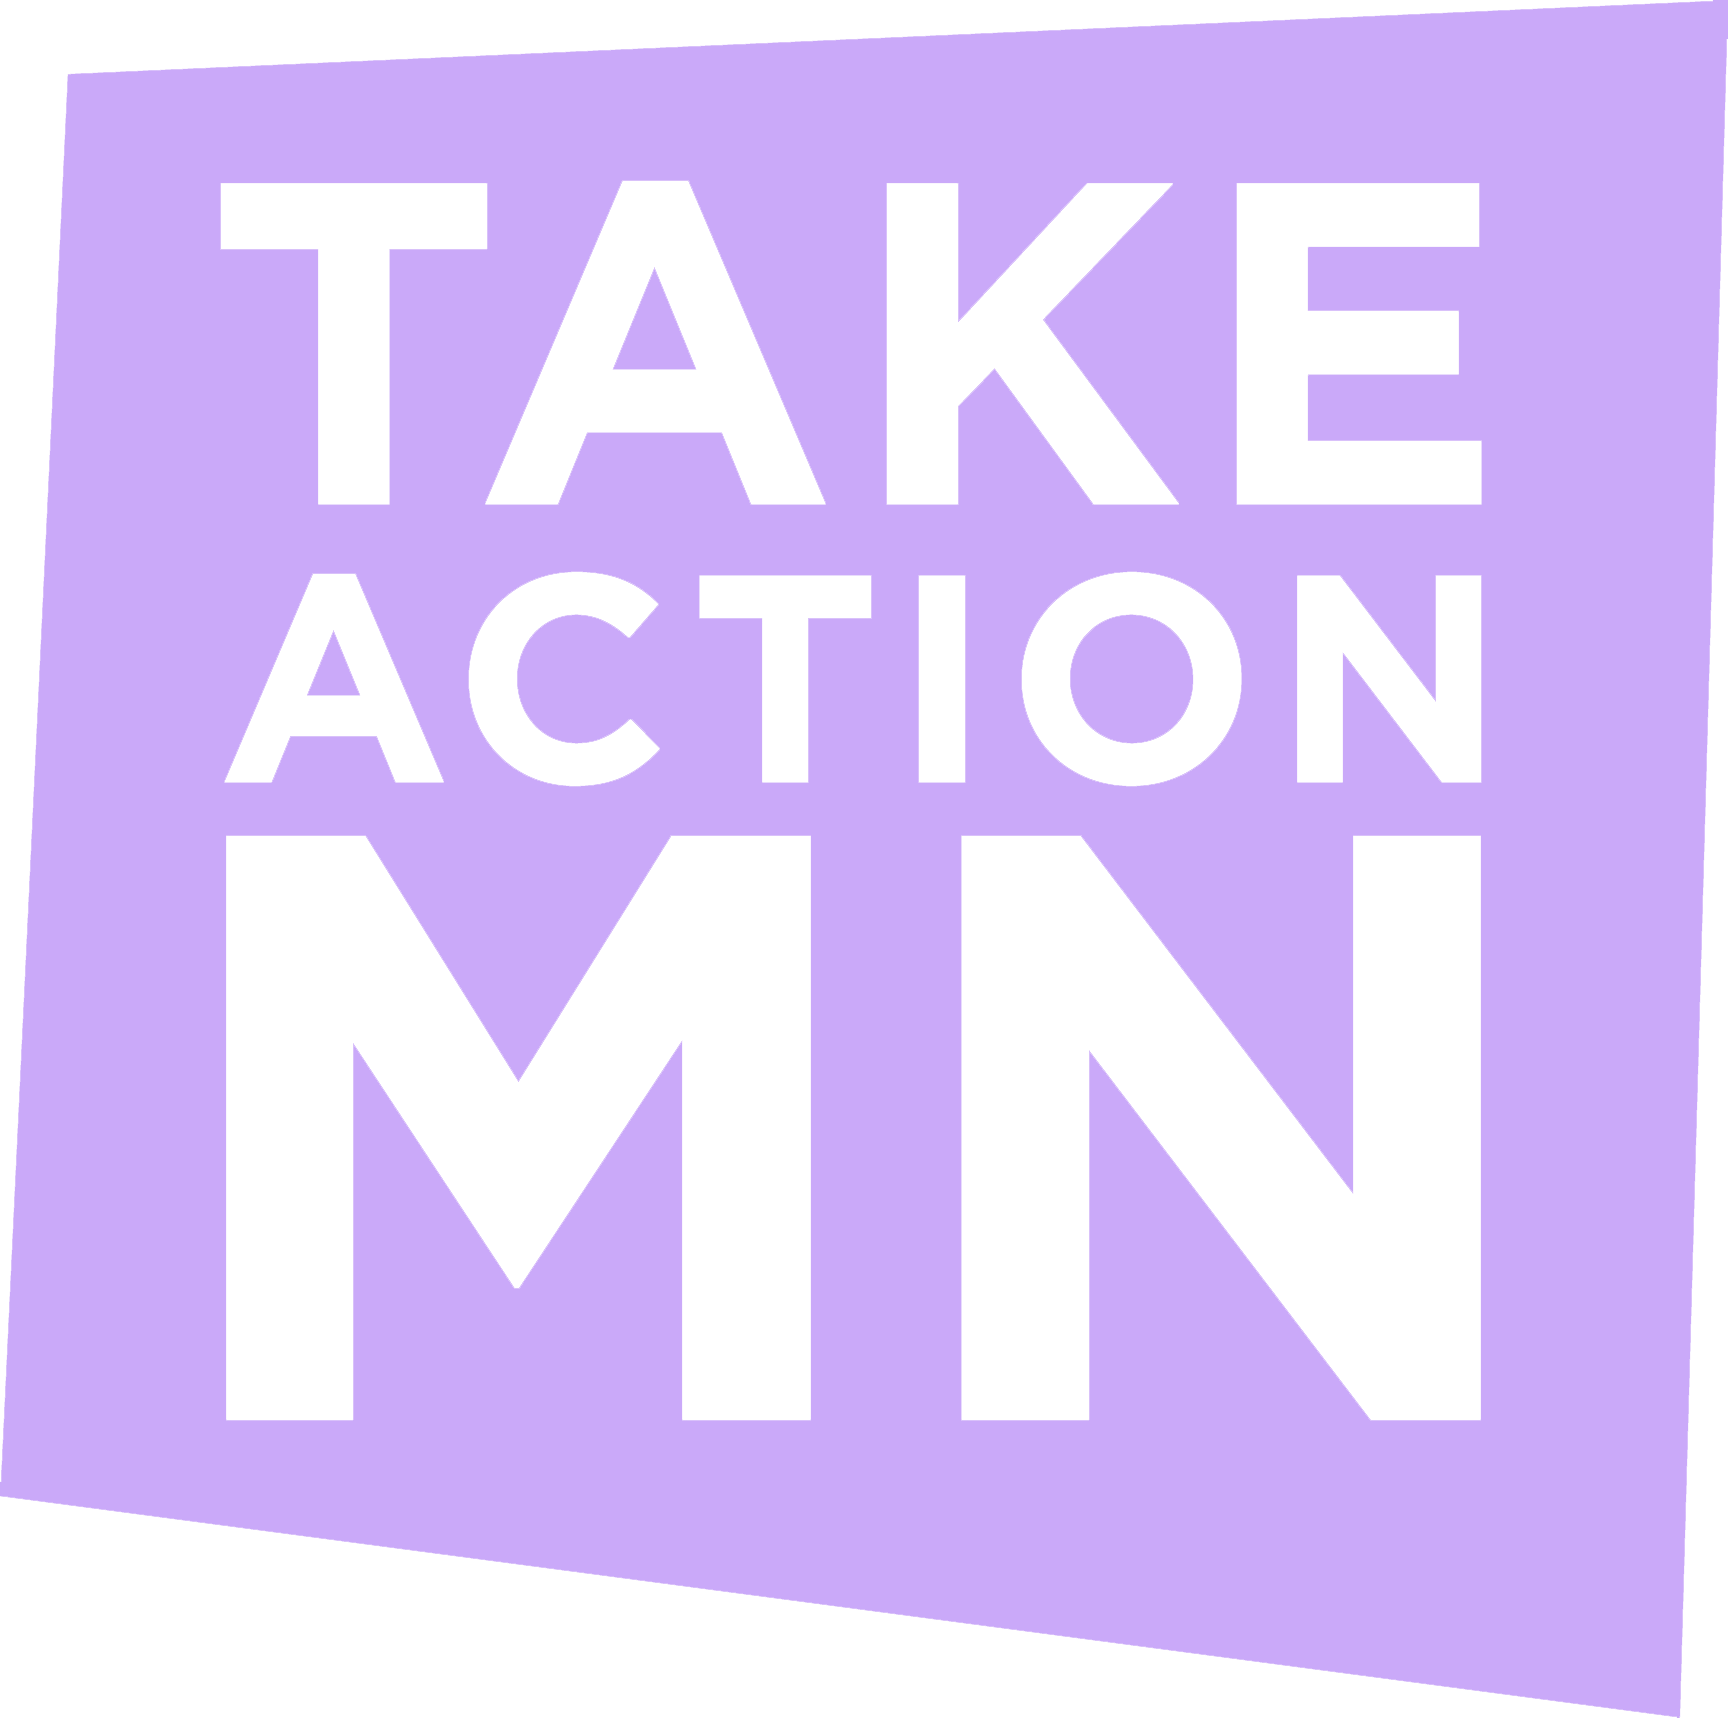 Take Action Minnesota